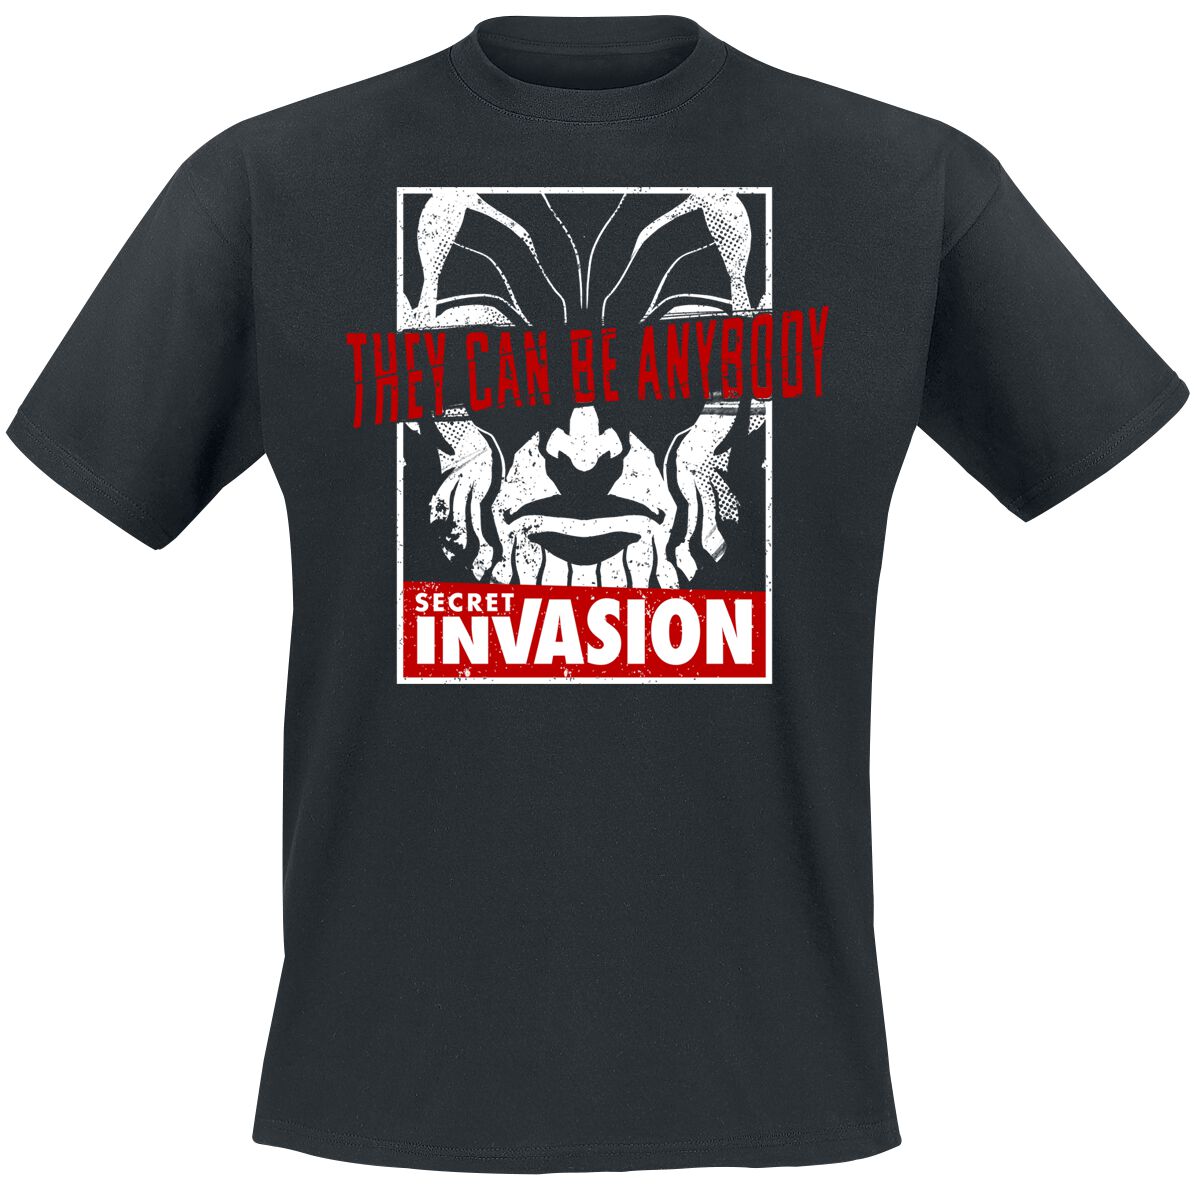 Secret Invasion - Marvel T-Shirt - They Can Be Anybody - S bis XL - für Männer - Größe S - schwarz  - EMP exklusives Merchandise!